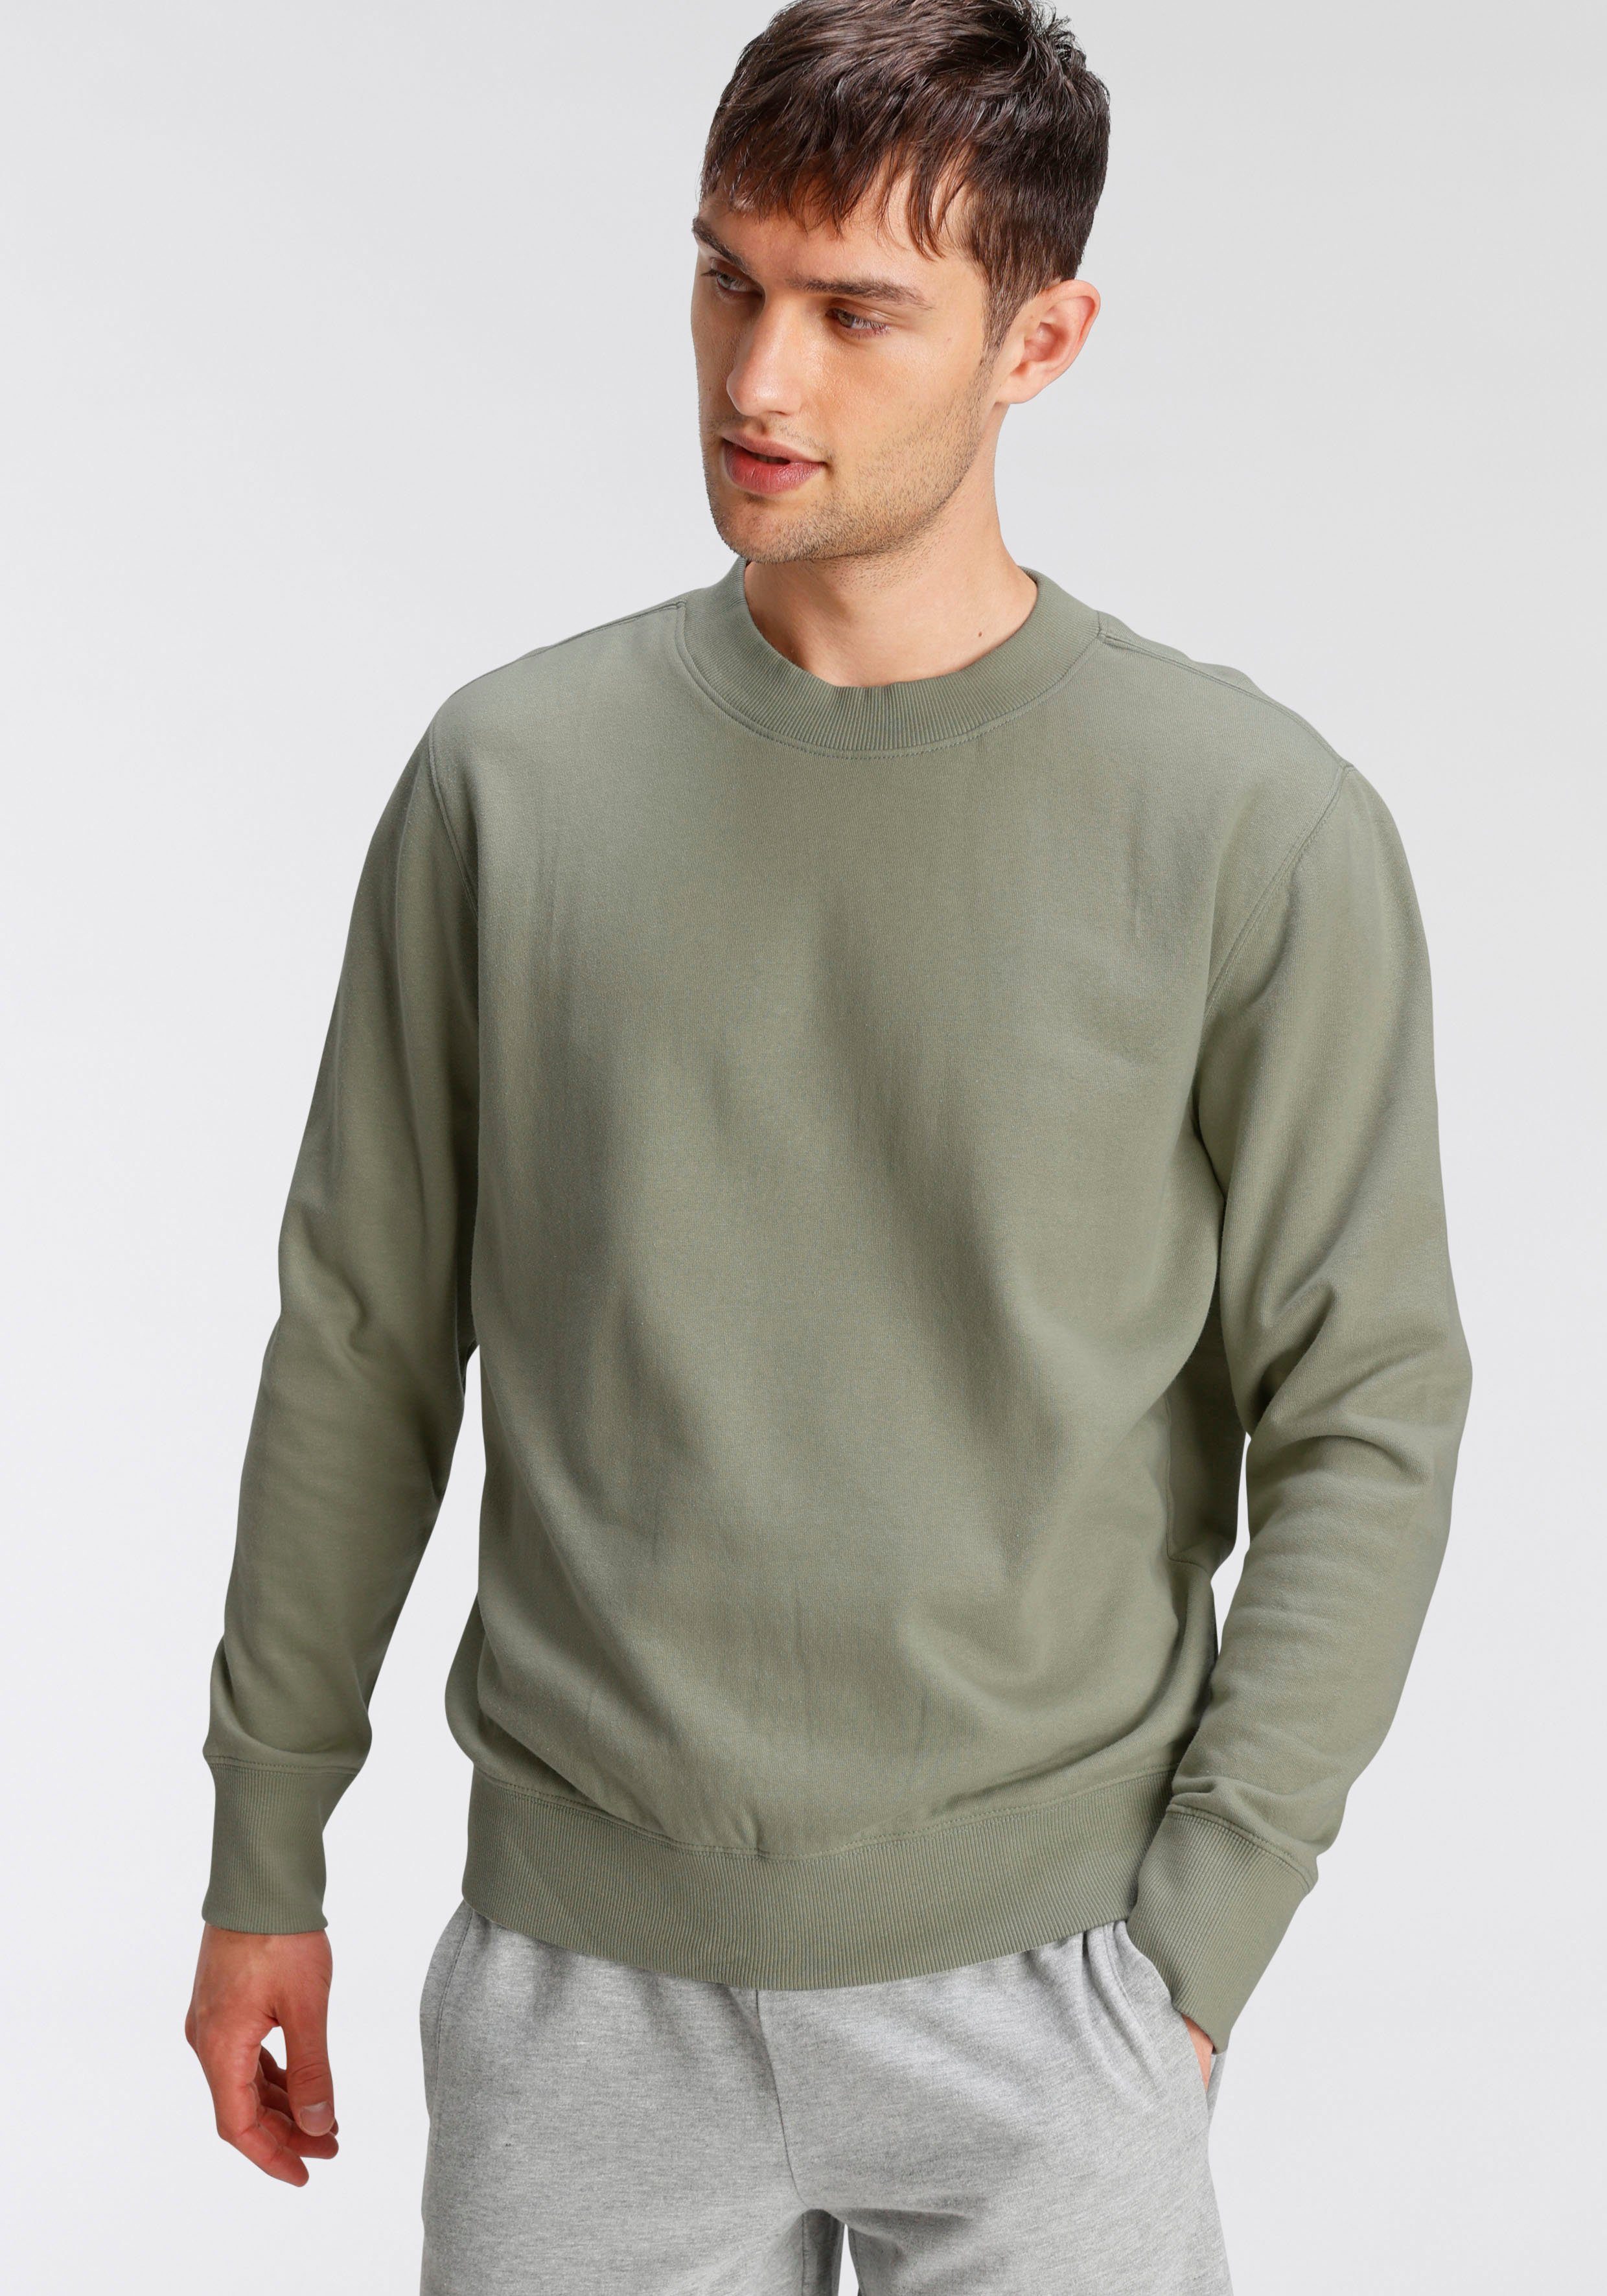 OTTO products Sweatshirt aus Bio-Baumwolle olivgrün